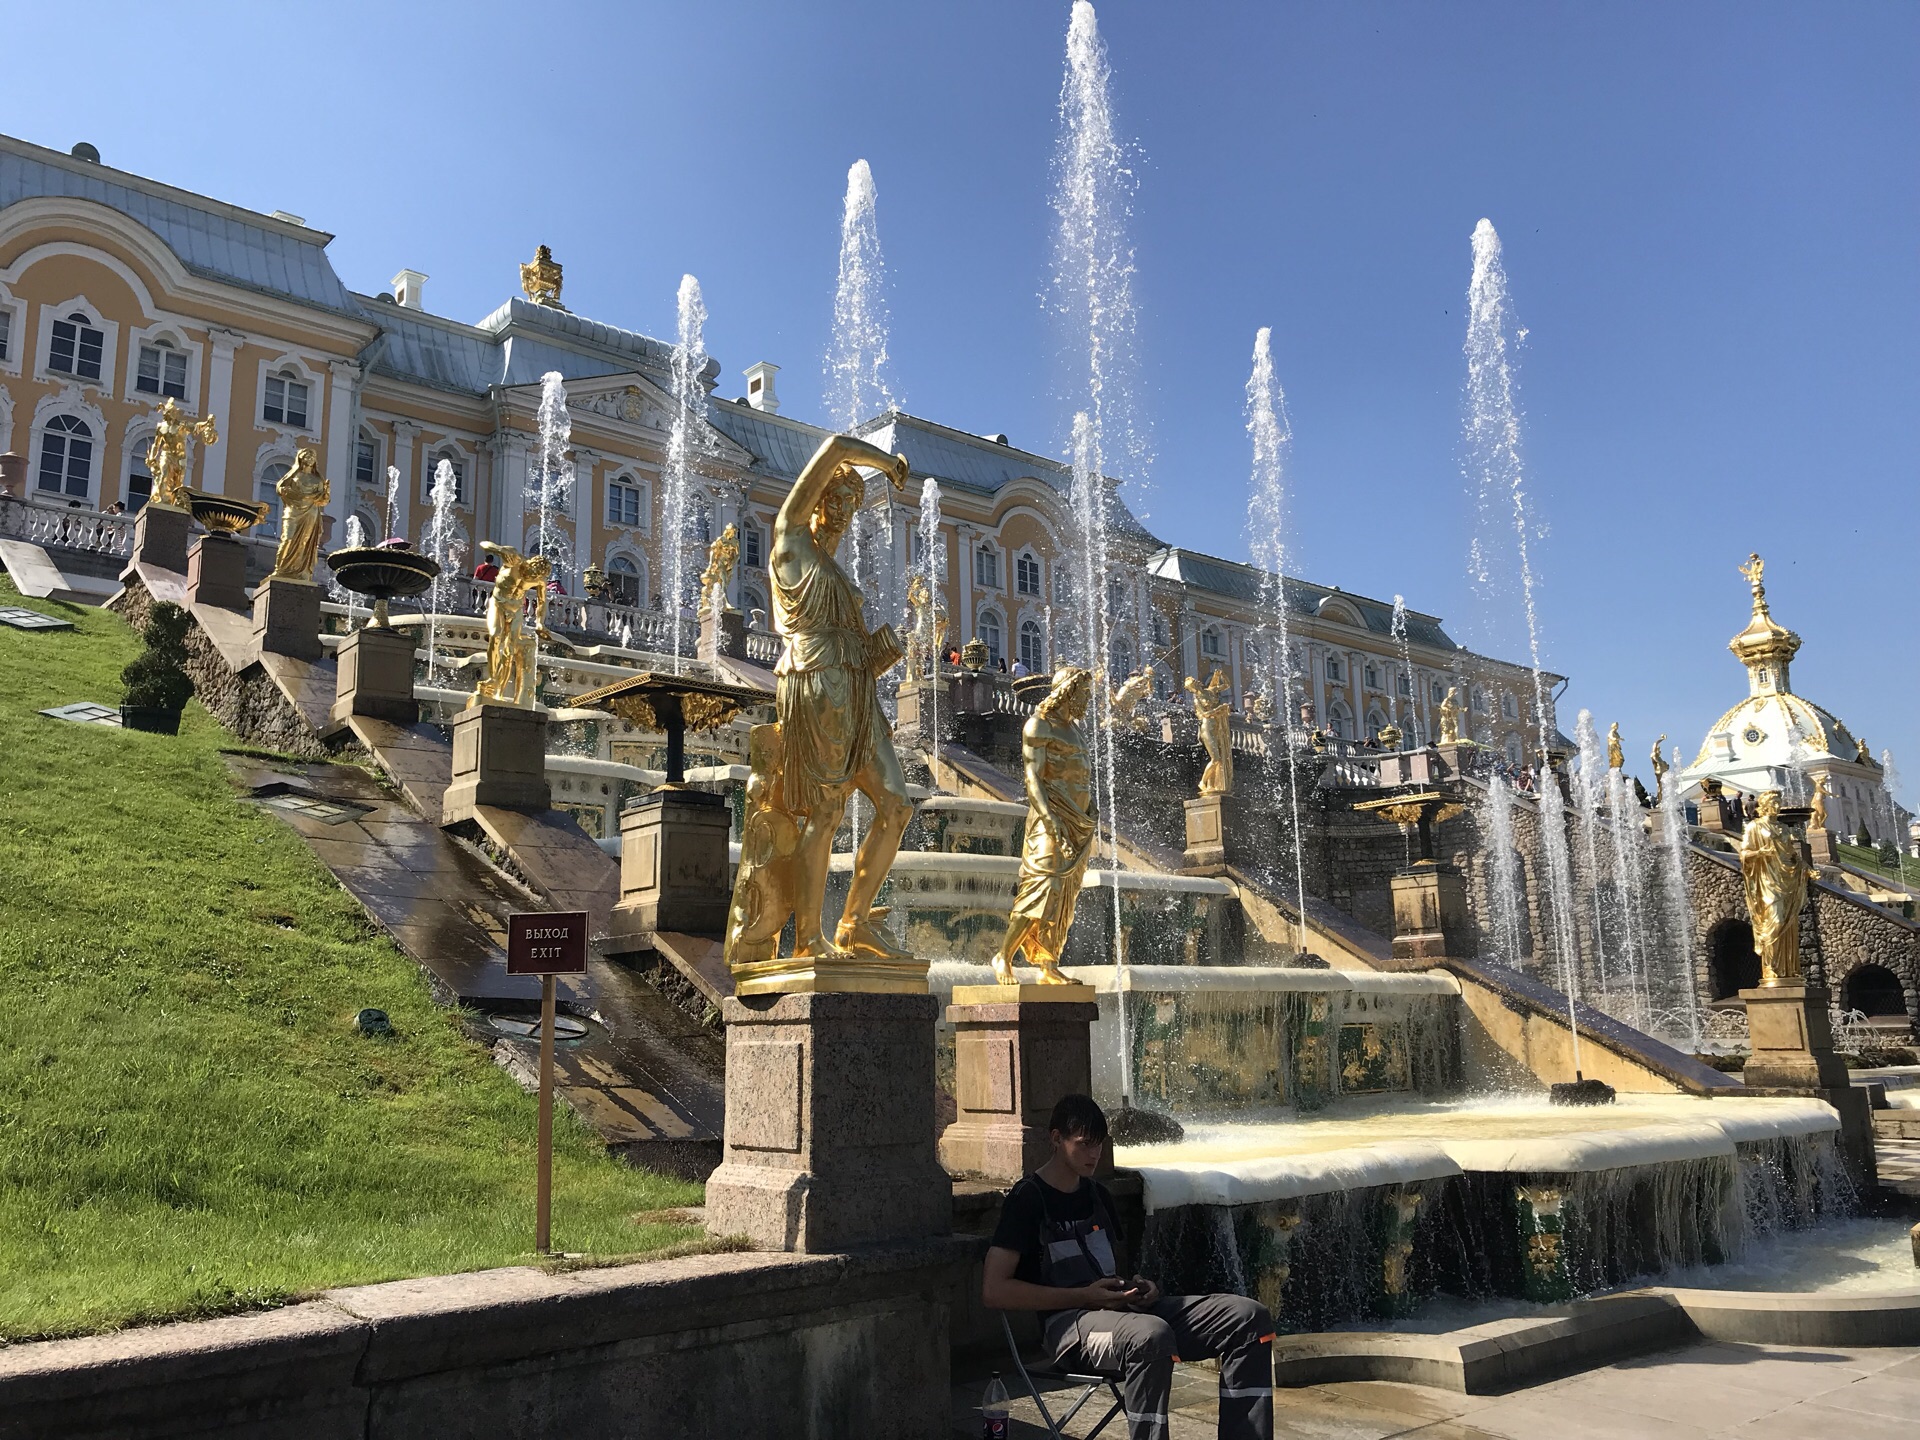 夏宫 - 圣彼得堡景点 - 华侨城旅游网